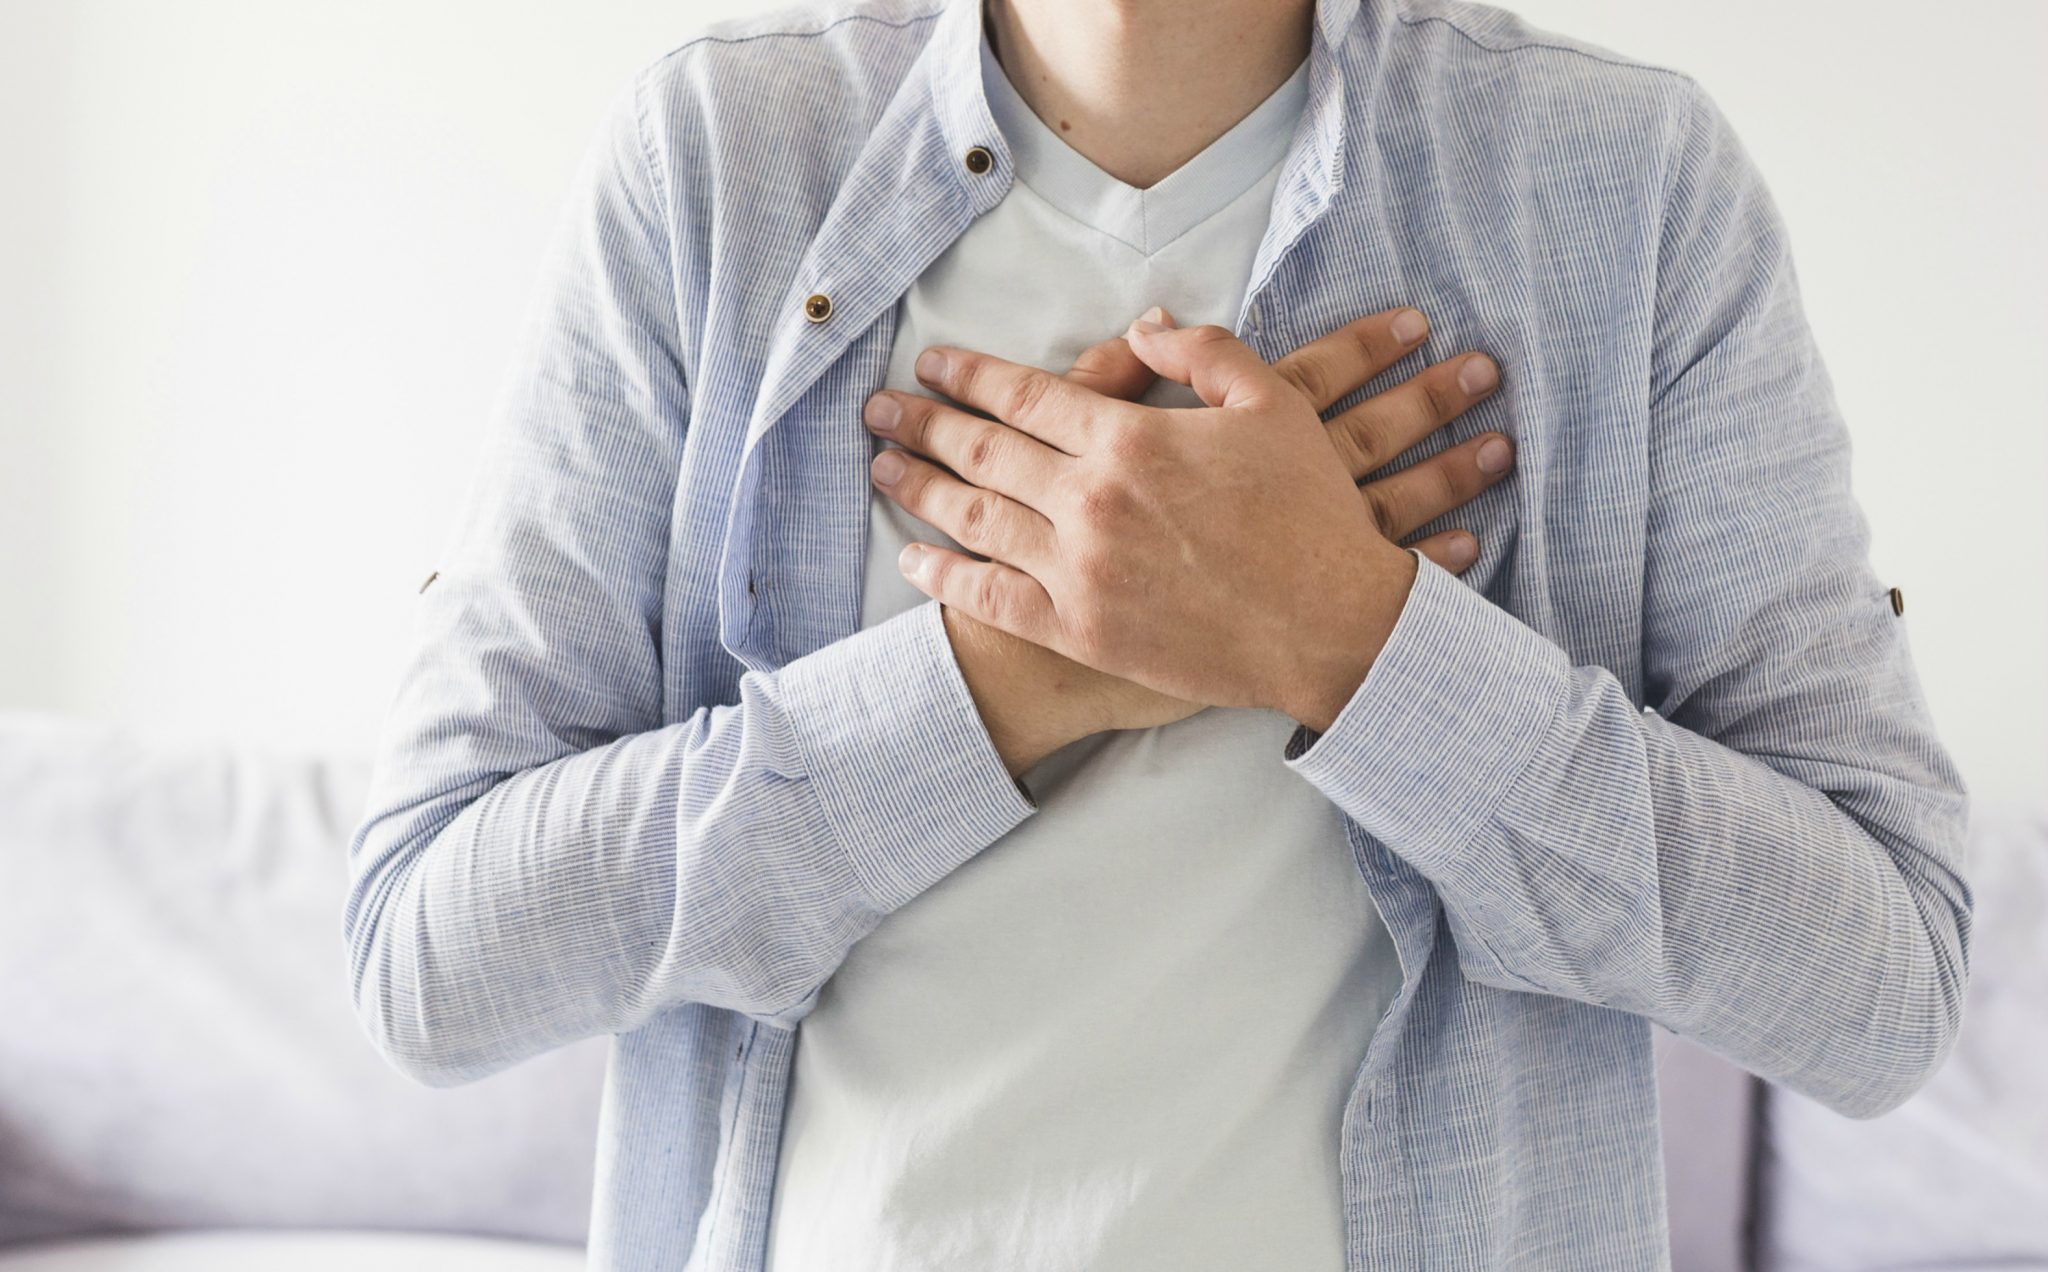 A Boehringer Ingelheim e a Eli Lilly anunciaram que resultados primários foram positivos para medicamento contra insuficiência cardíaca.